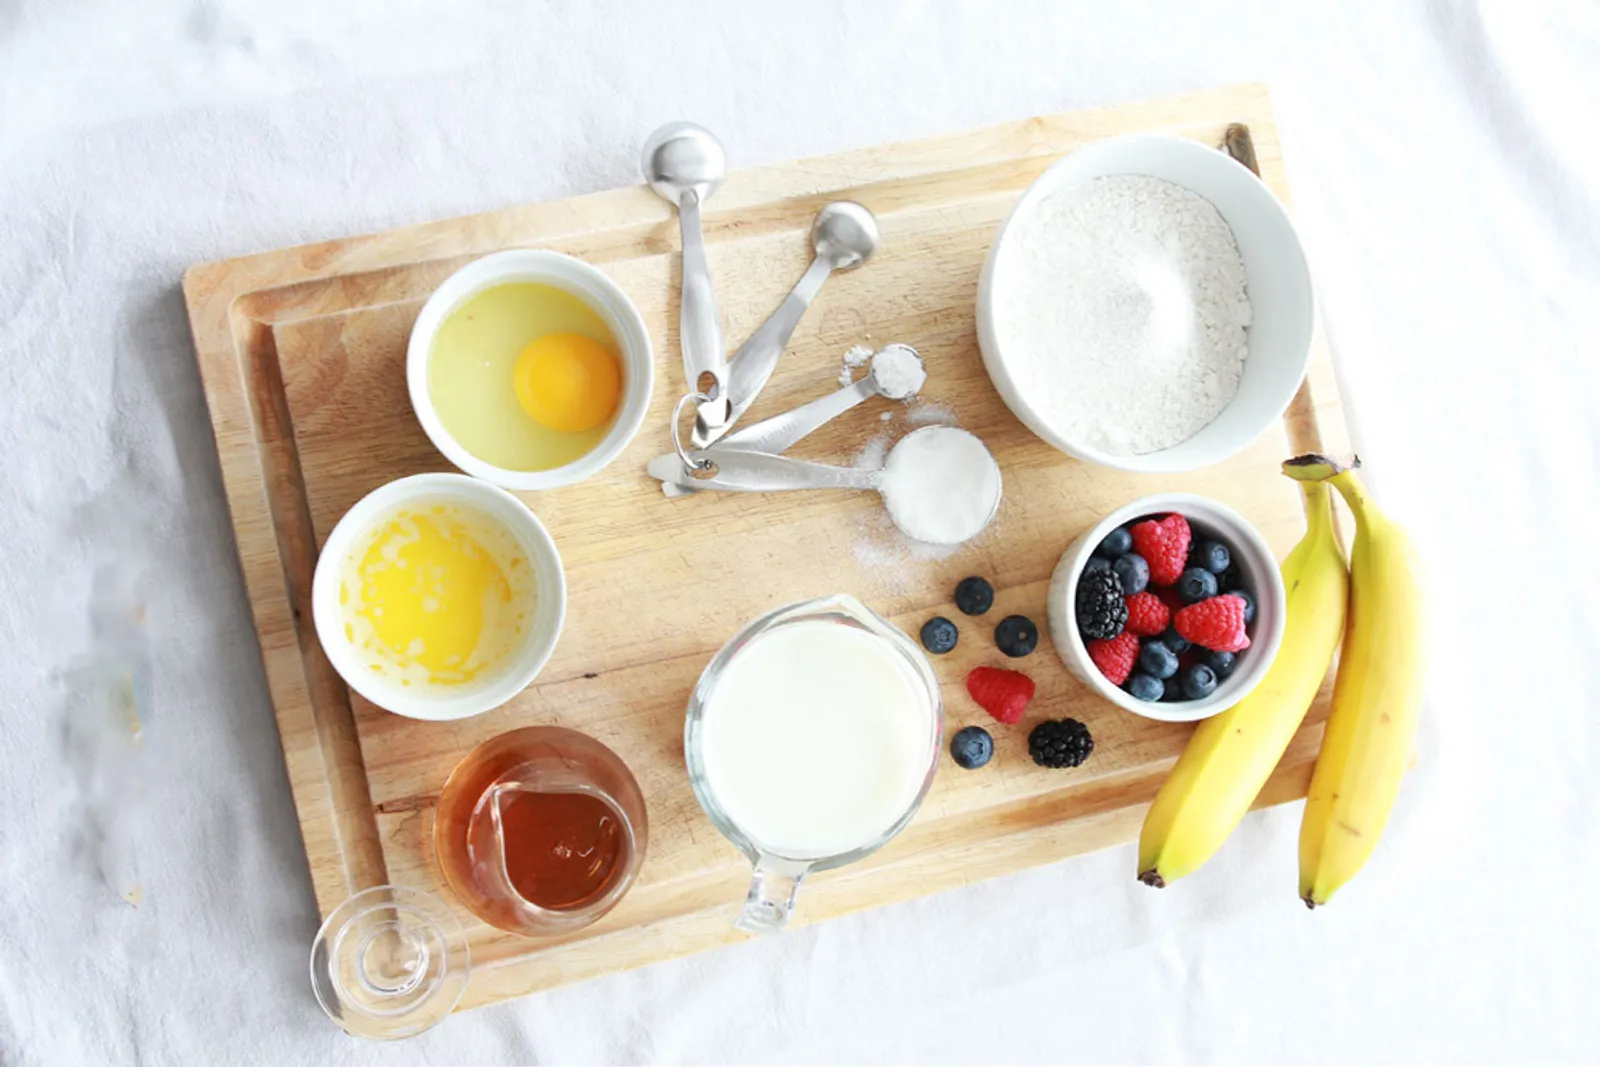 Inilah Resep Praktis dan Menyehatkan Membuat Pancake untuk Menu Sarapan Kamu